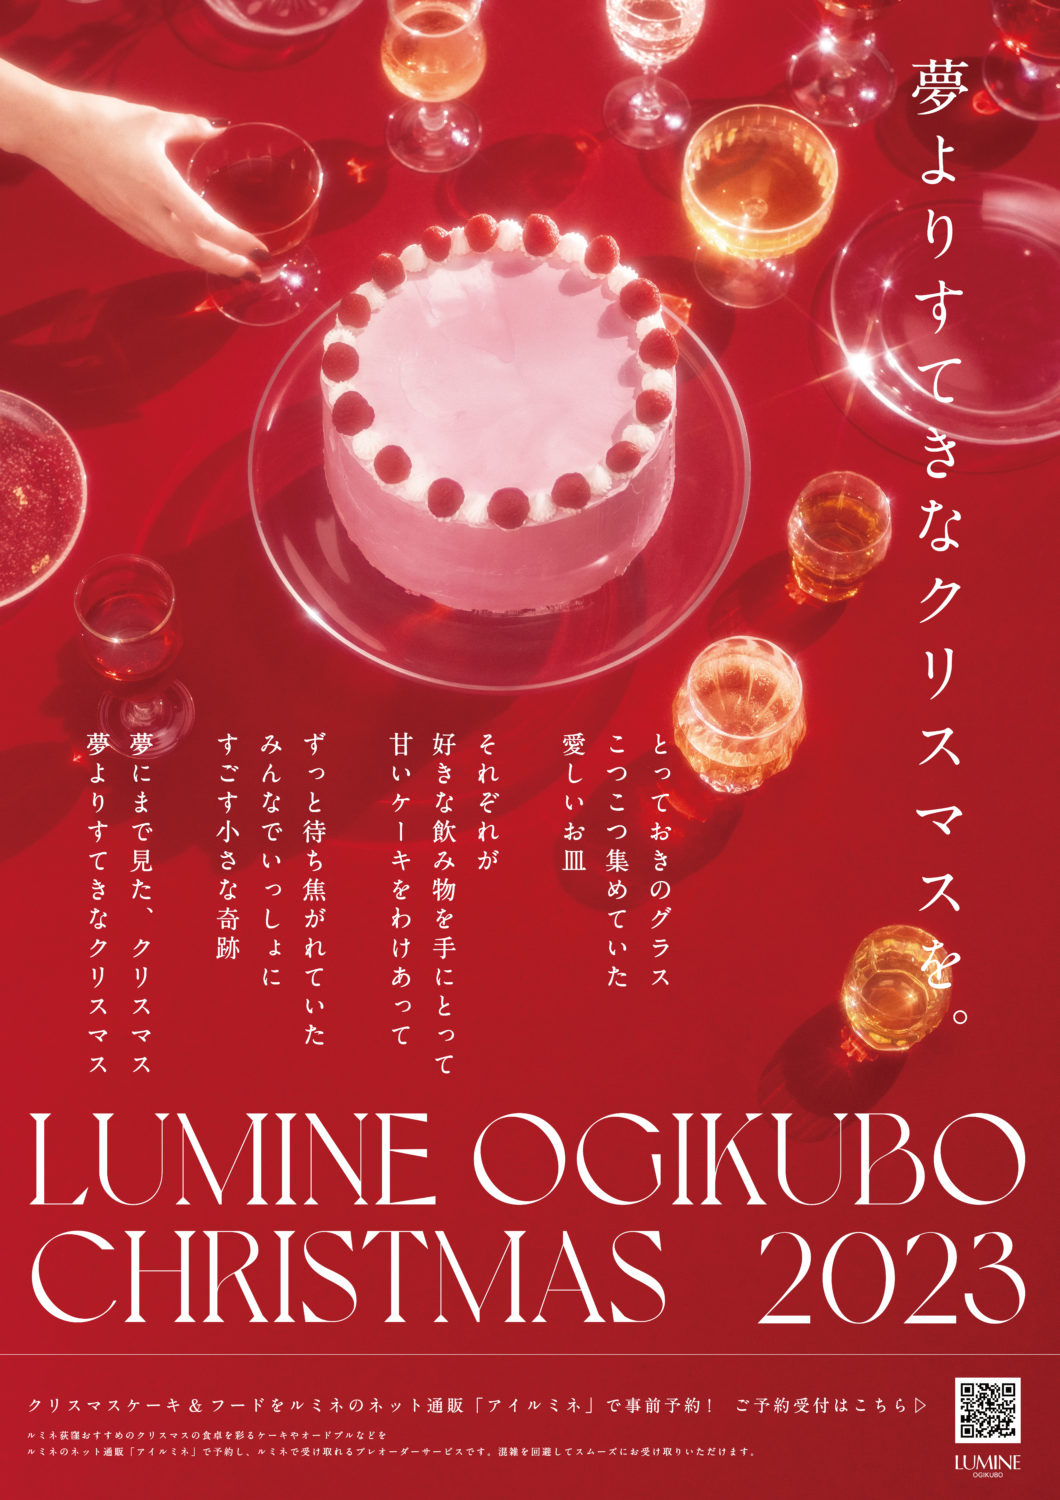 ルミネ荻窪「LUMINE OGIKUBO CHRISTMAS 2023」のキービジュアル制作をme and youが担当しました